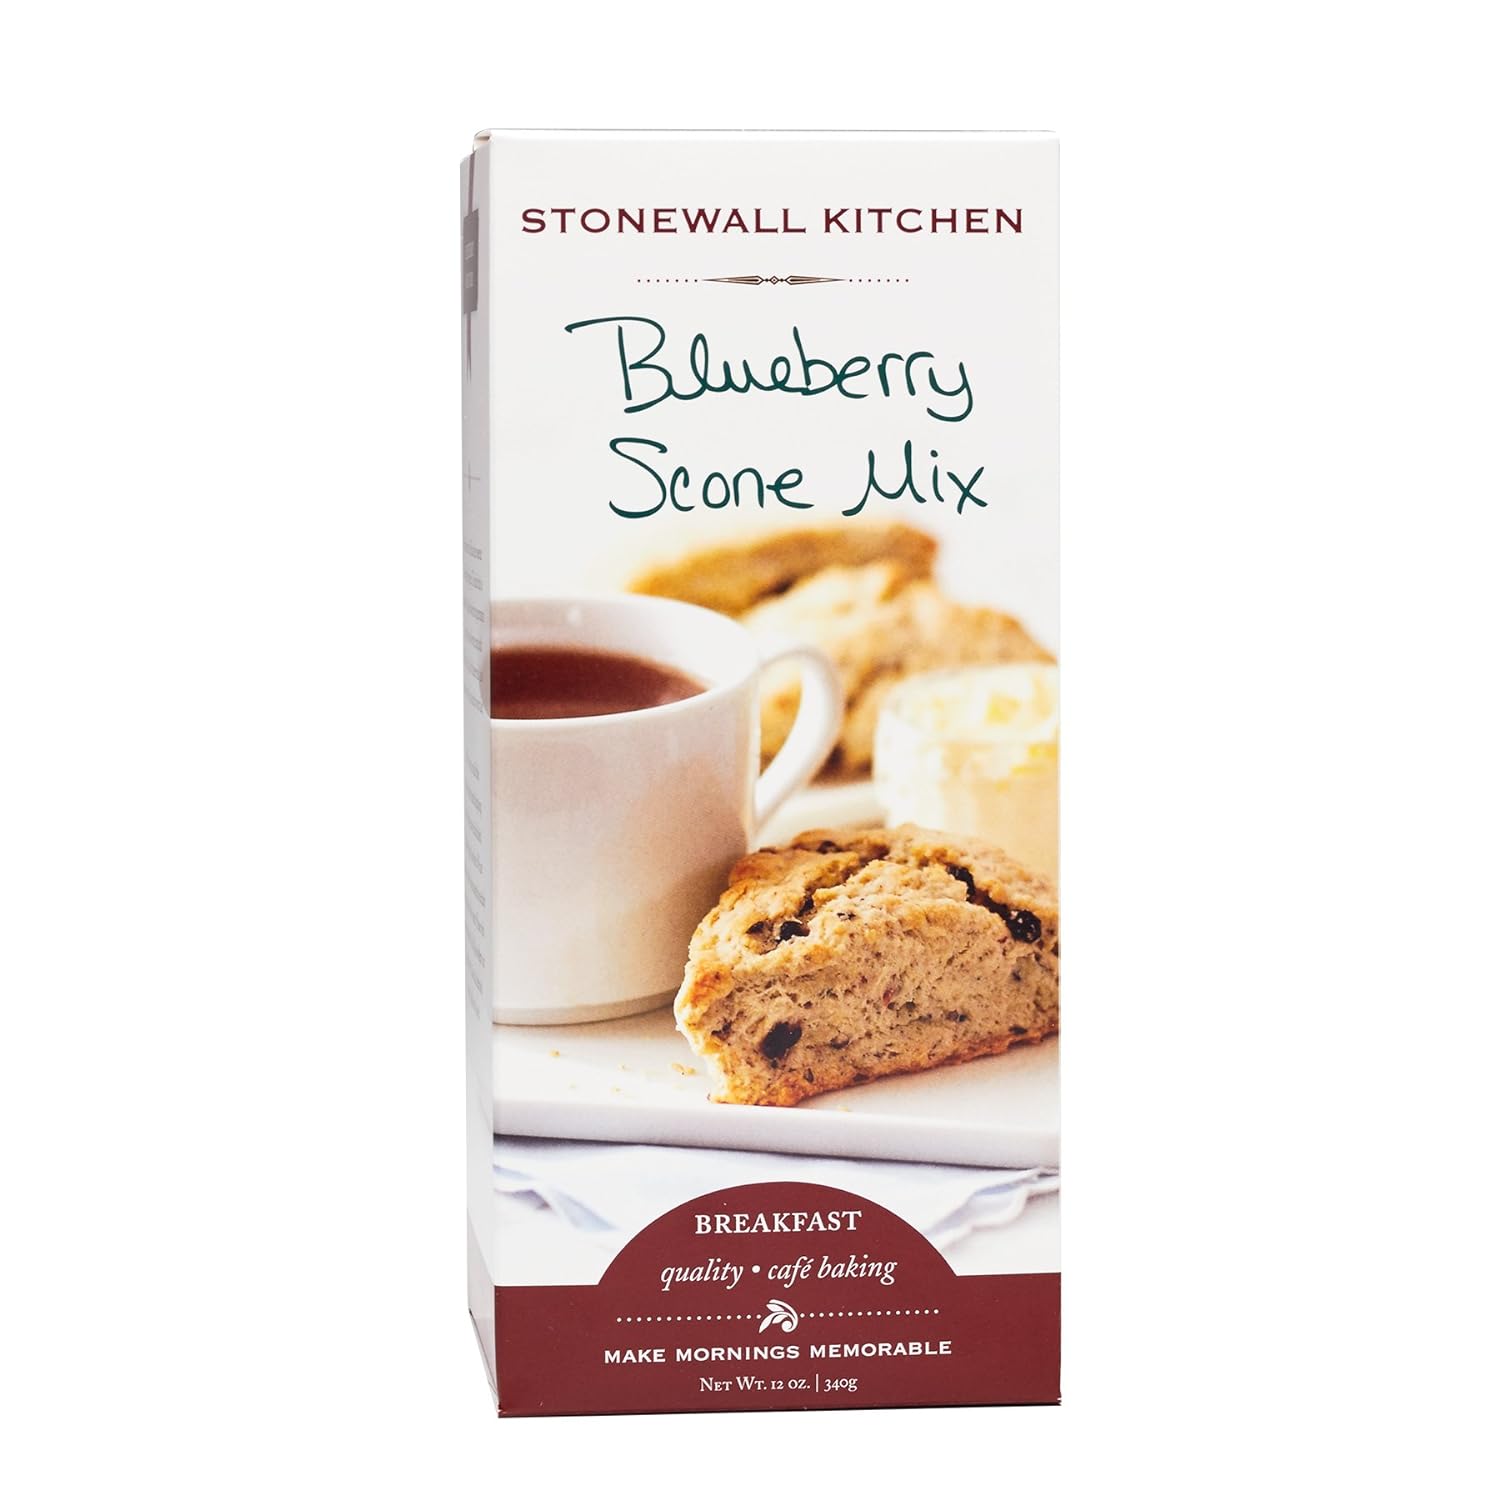 Stonewall Kitchen Blueberry Scone Mix, 12 ounces